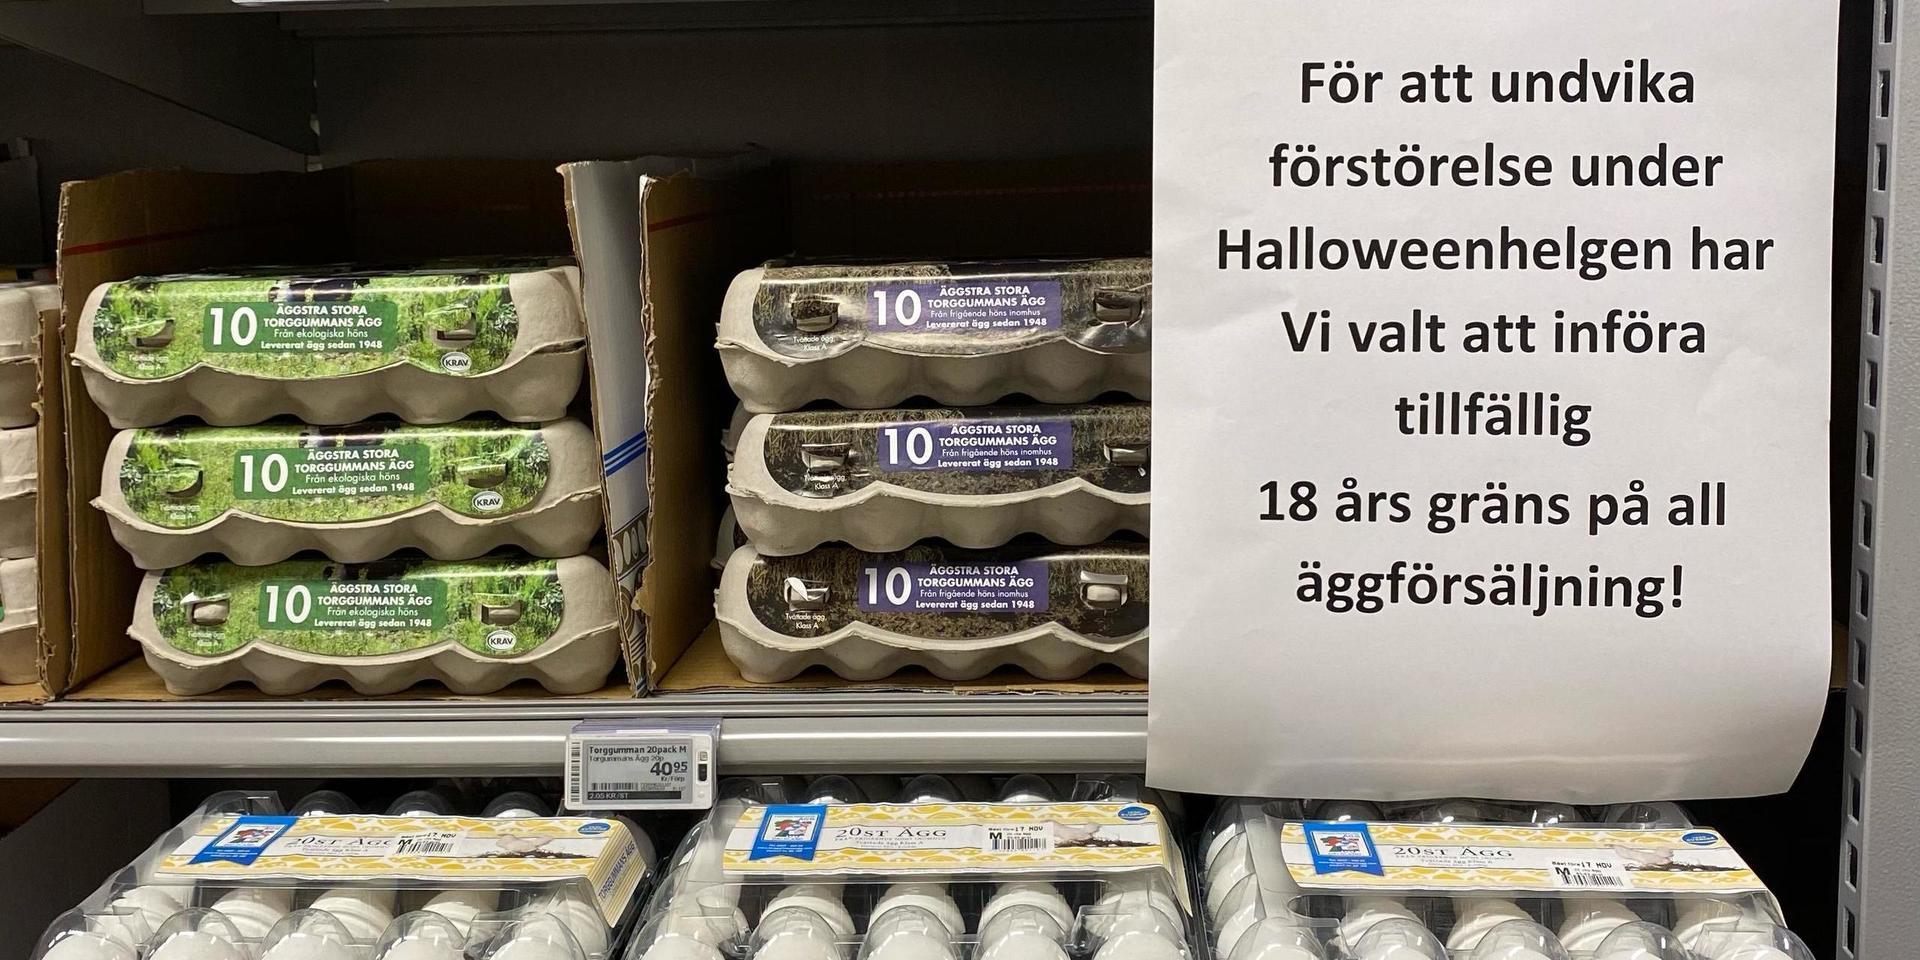 På ICA Kvantum i Stenungsund har man under helgen infört åldersgräns för att köpa ägg.